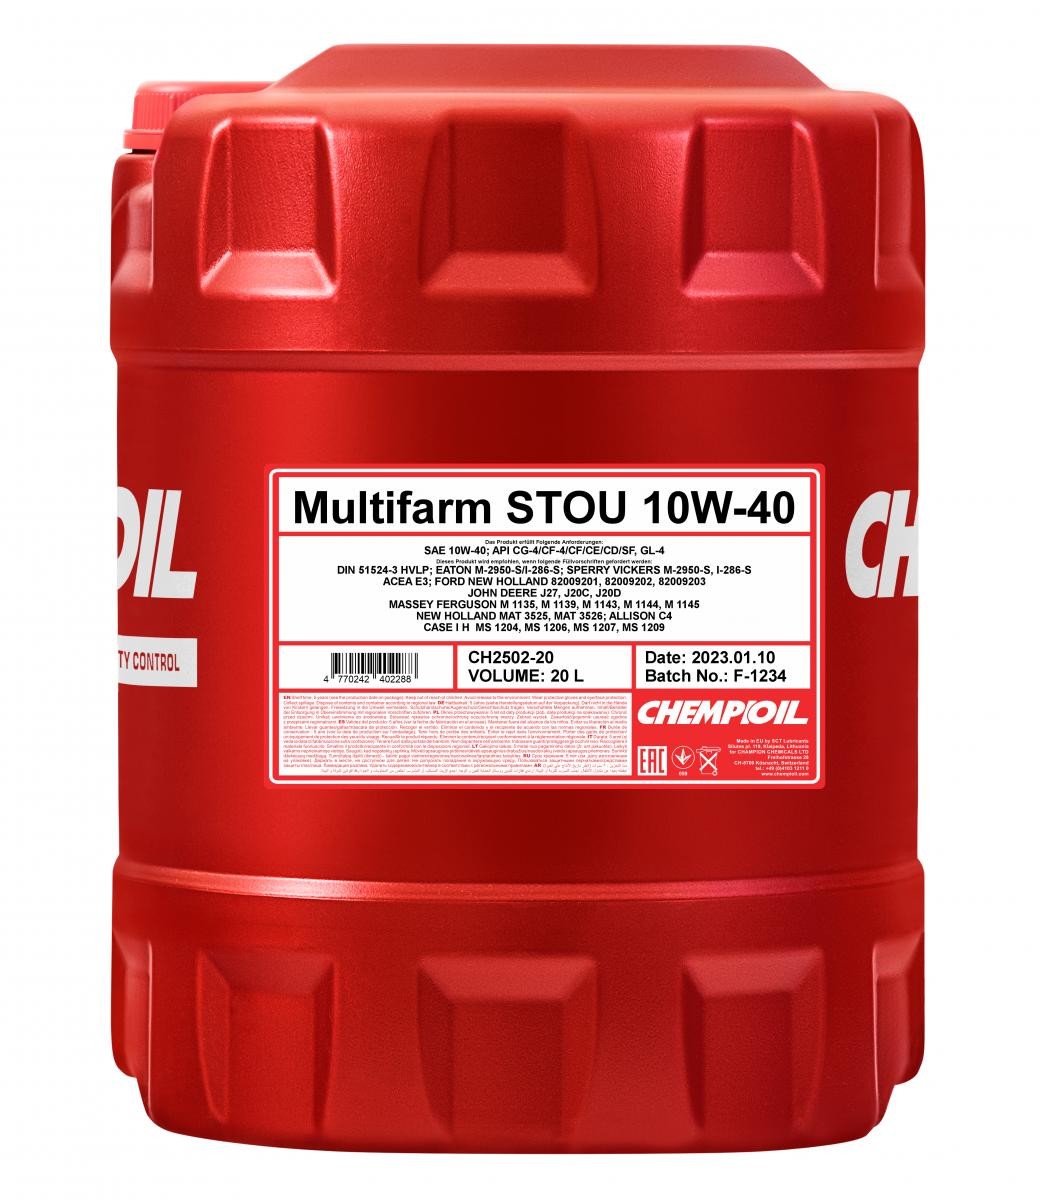 Auto oil ACEA E3 CHEMPIOIL - CH2502-20 Multifarm, STOU